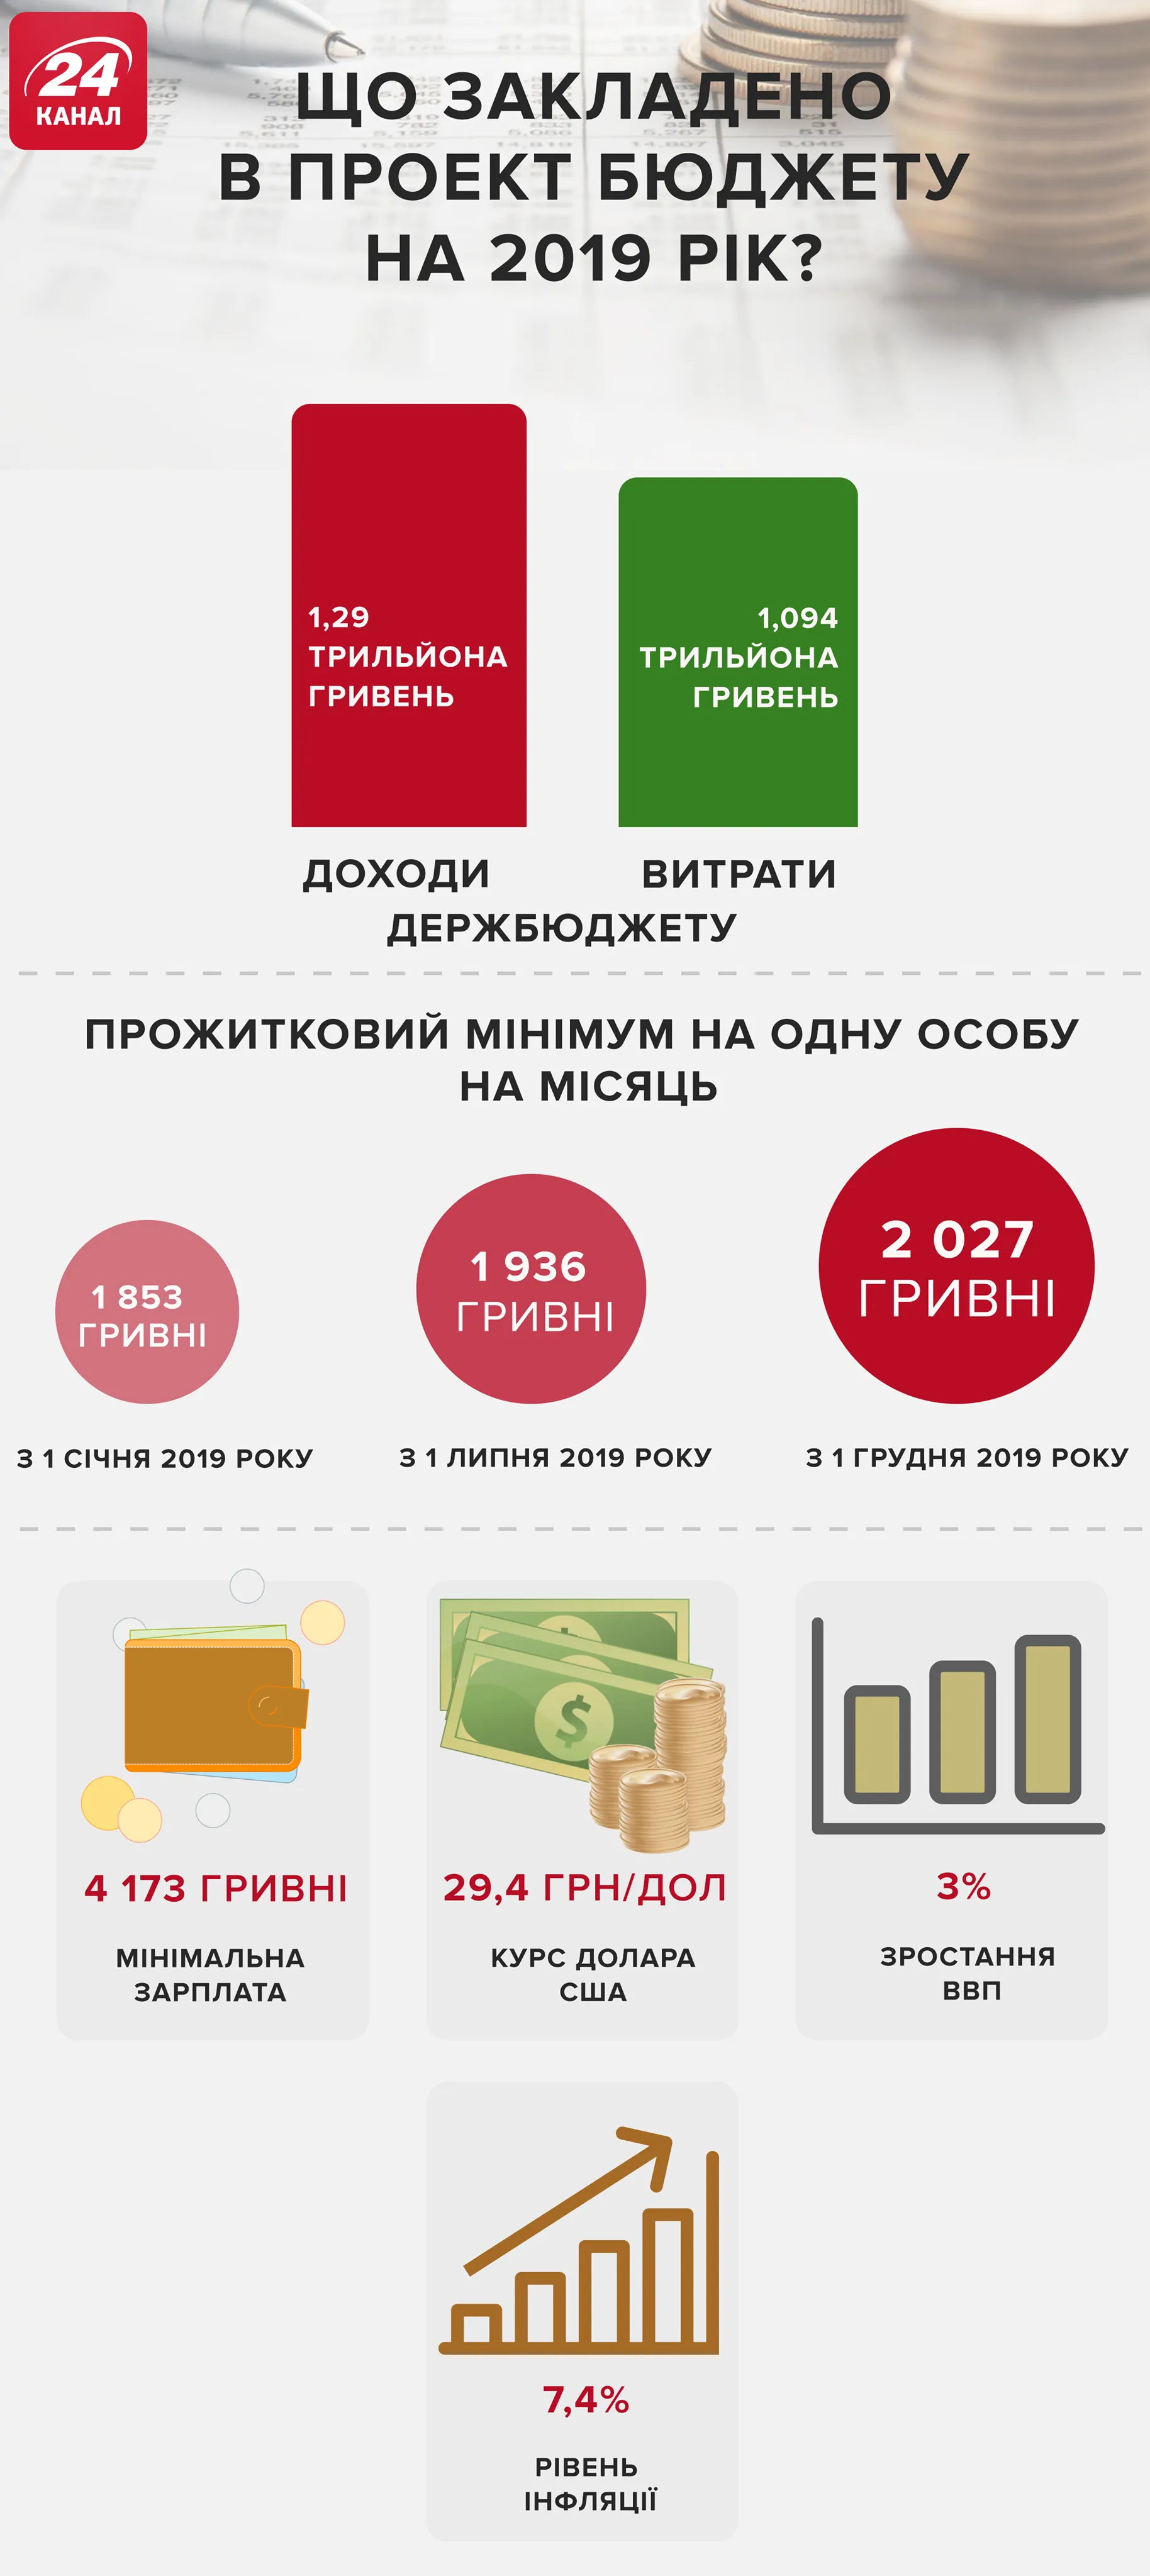 Бюджет-2019 в Україні: головні цифри